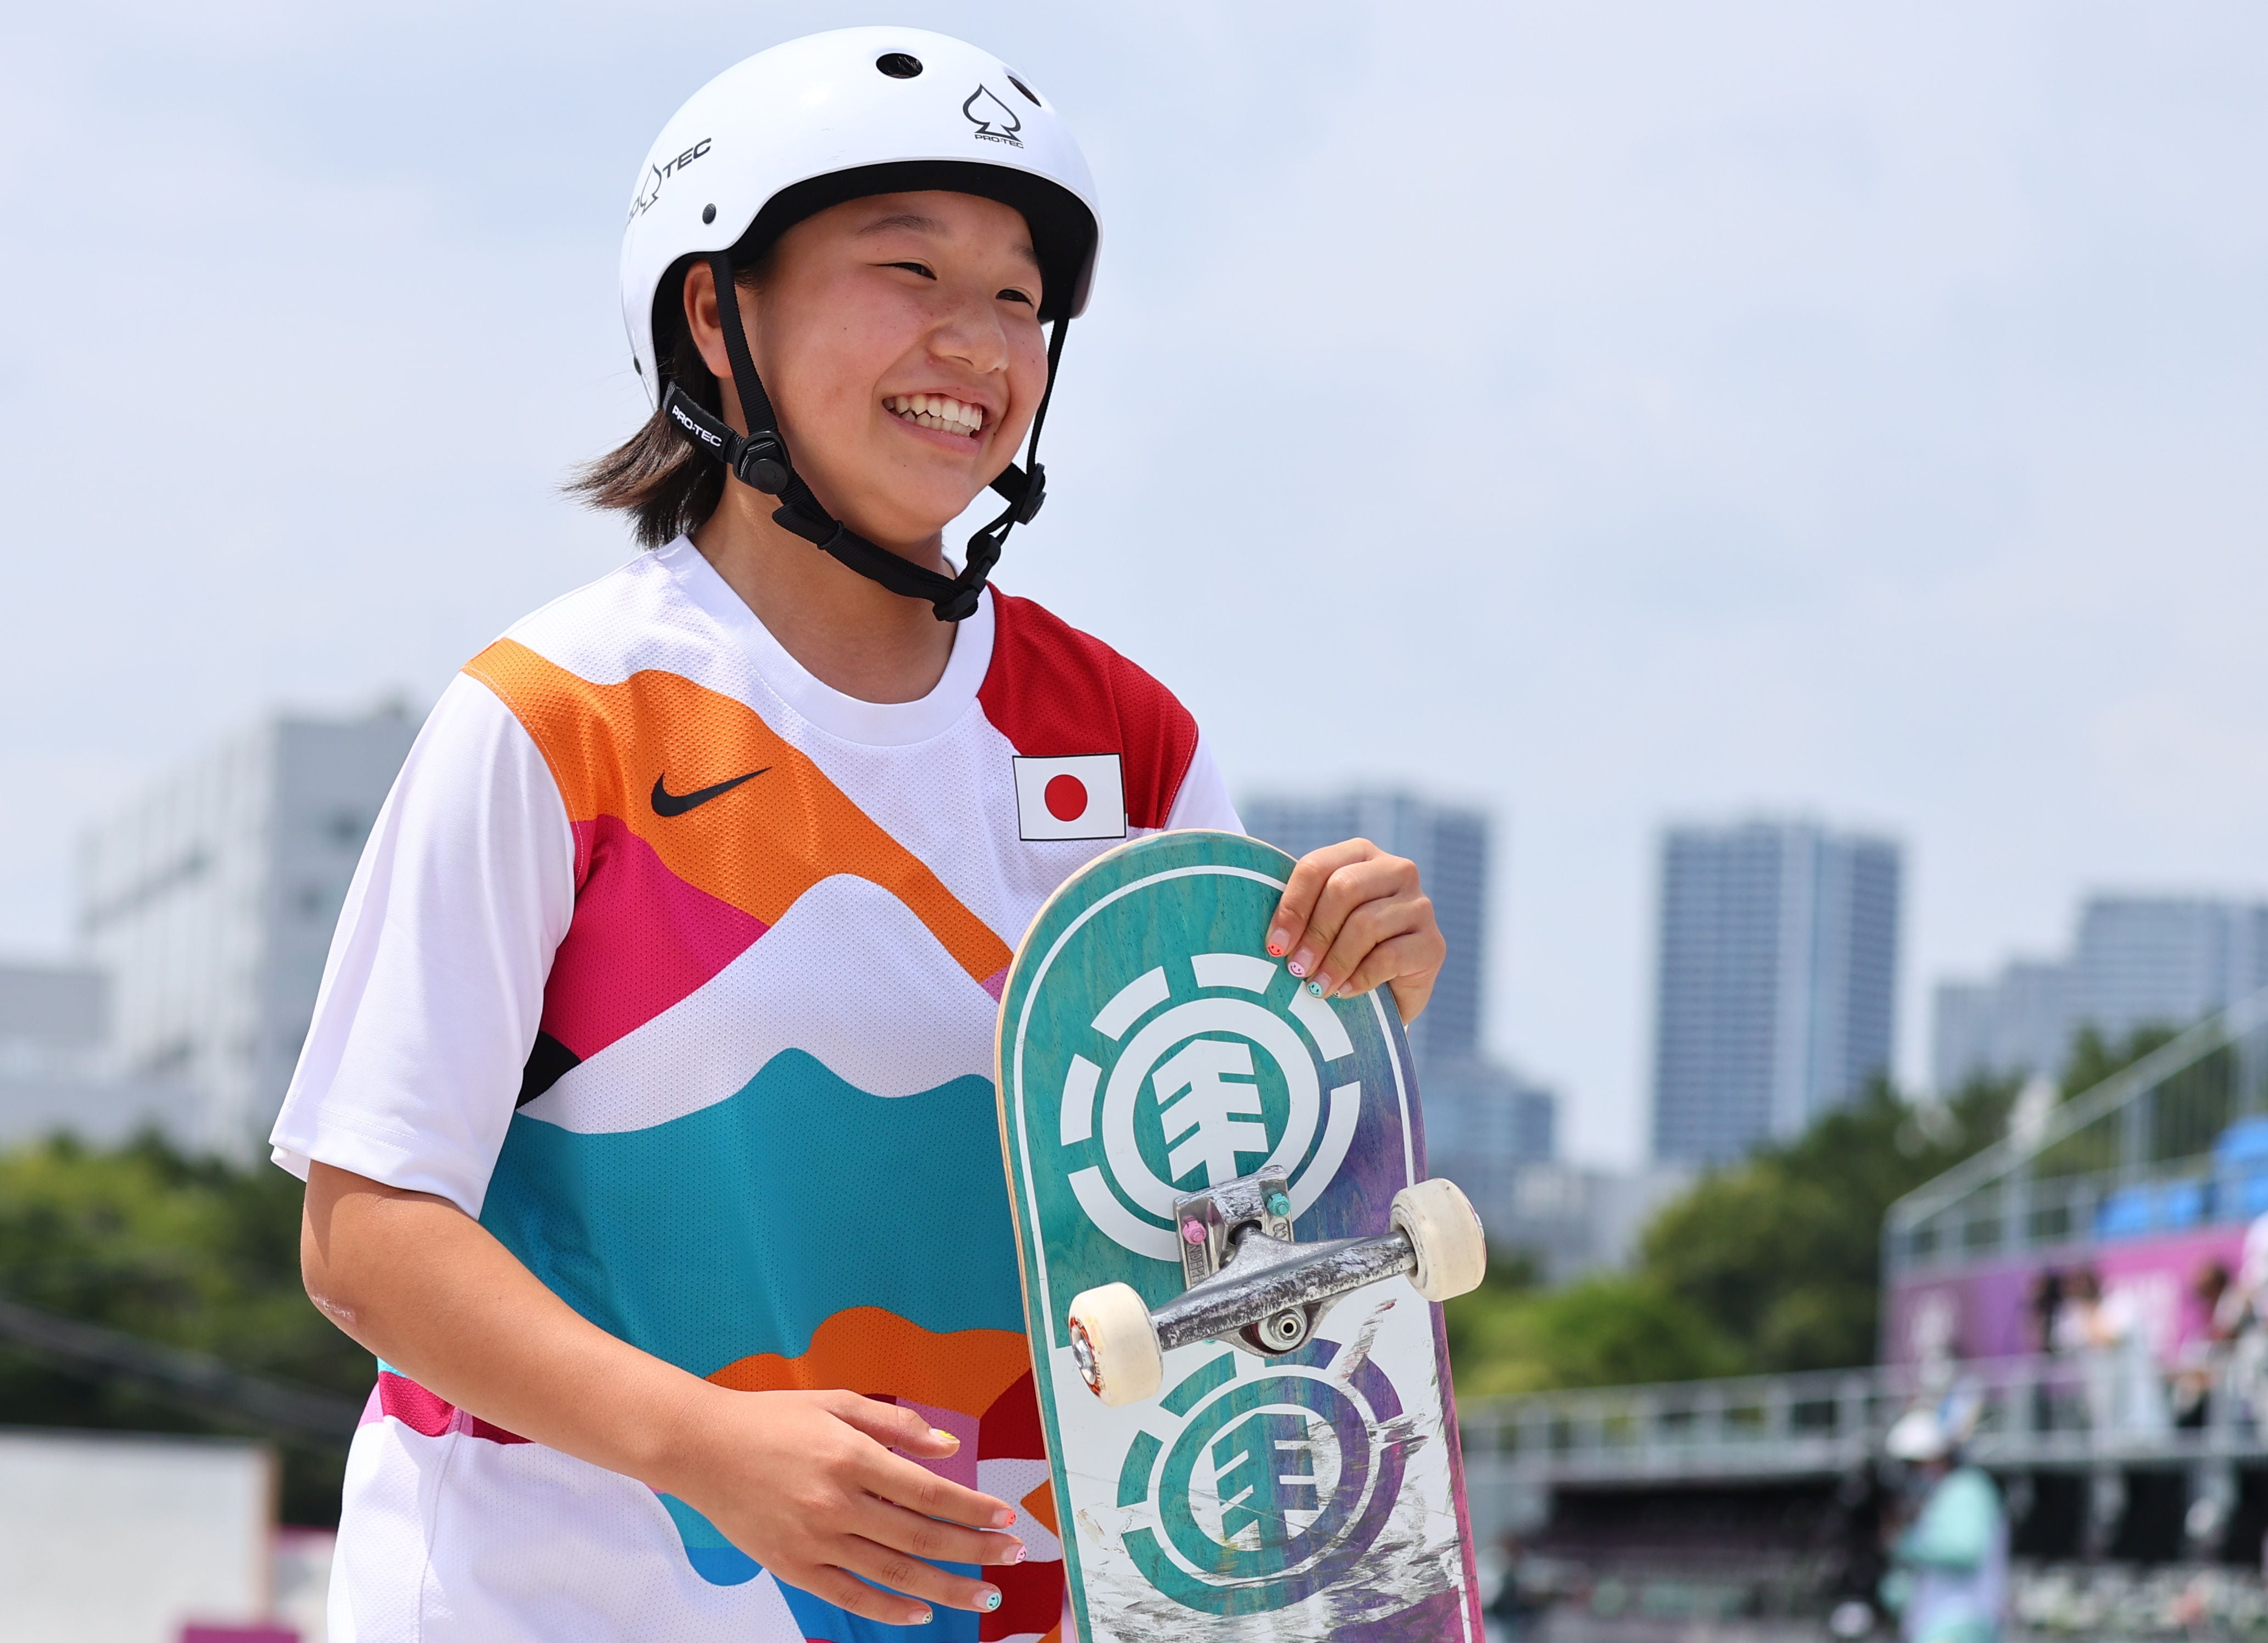 Momiji Nishiya, ganadora del oro olímpico en monopatinaje callejero, durante la final de su disciplina celebrada en el Ariake Urban Sports Park de Tokio, Japón, el 26 de julio de 2021. REUTERS/Lucy Nicholson